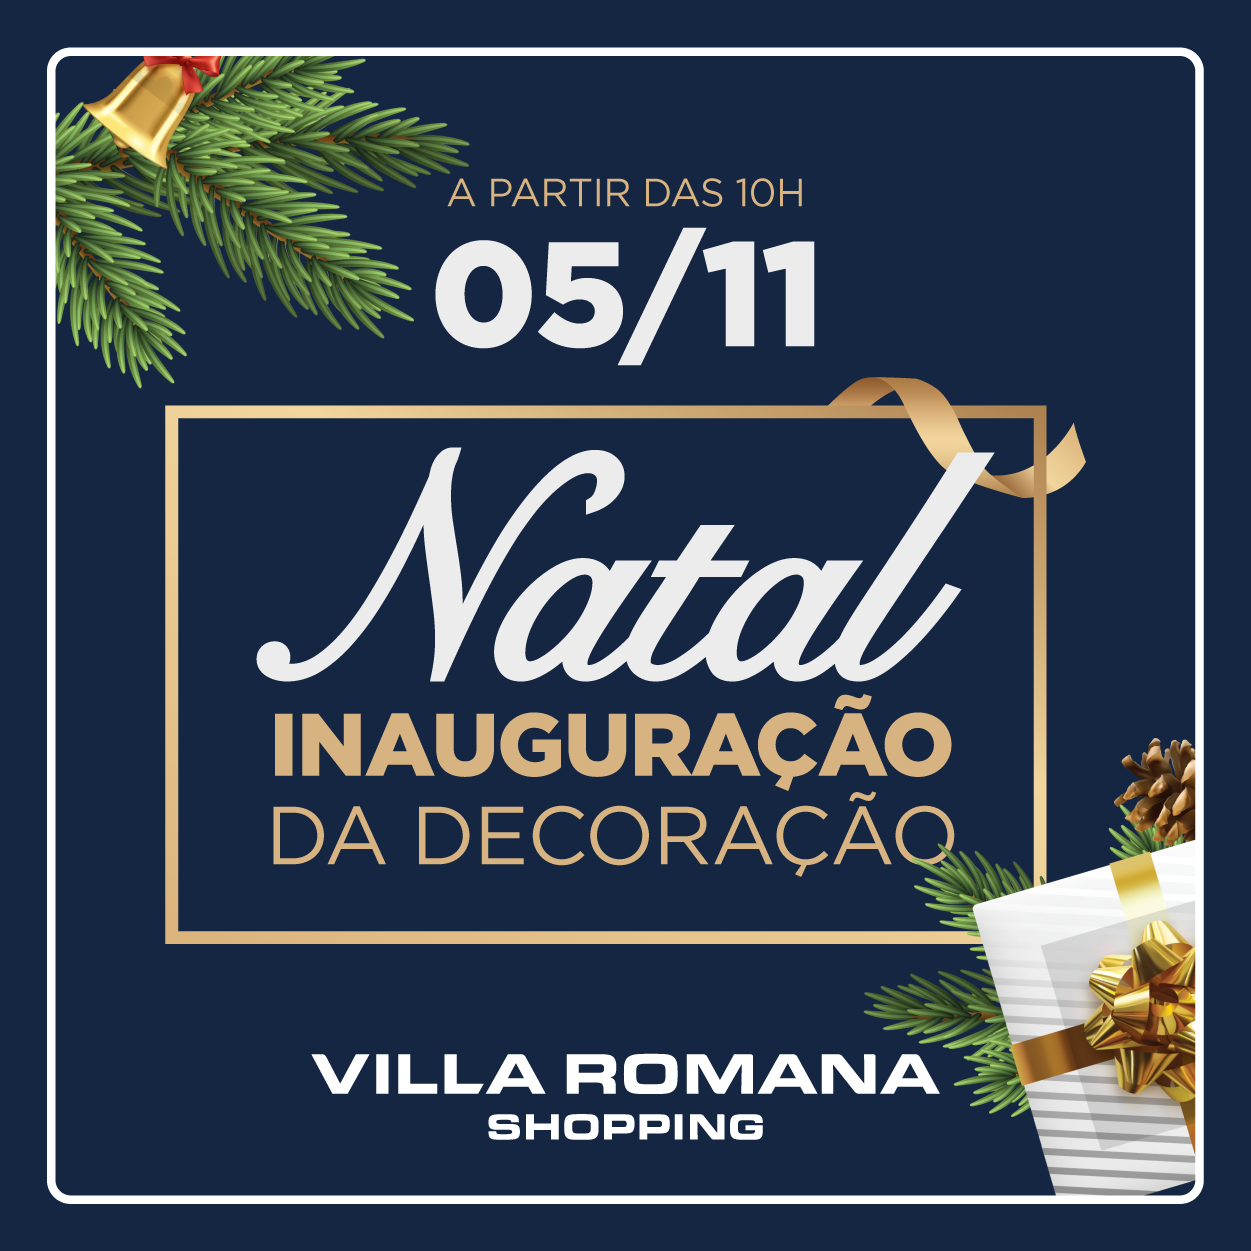 Villa Romana Shopping inaugura decoração de Natal nesta sexta (5) com Papai  Noel, árvore gigante e ação solidária - Villa Romana Shopping